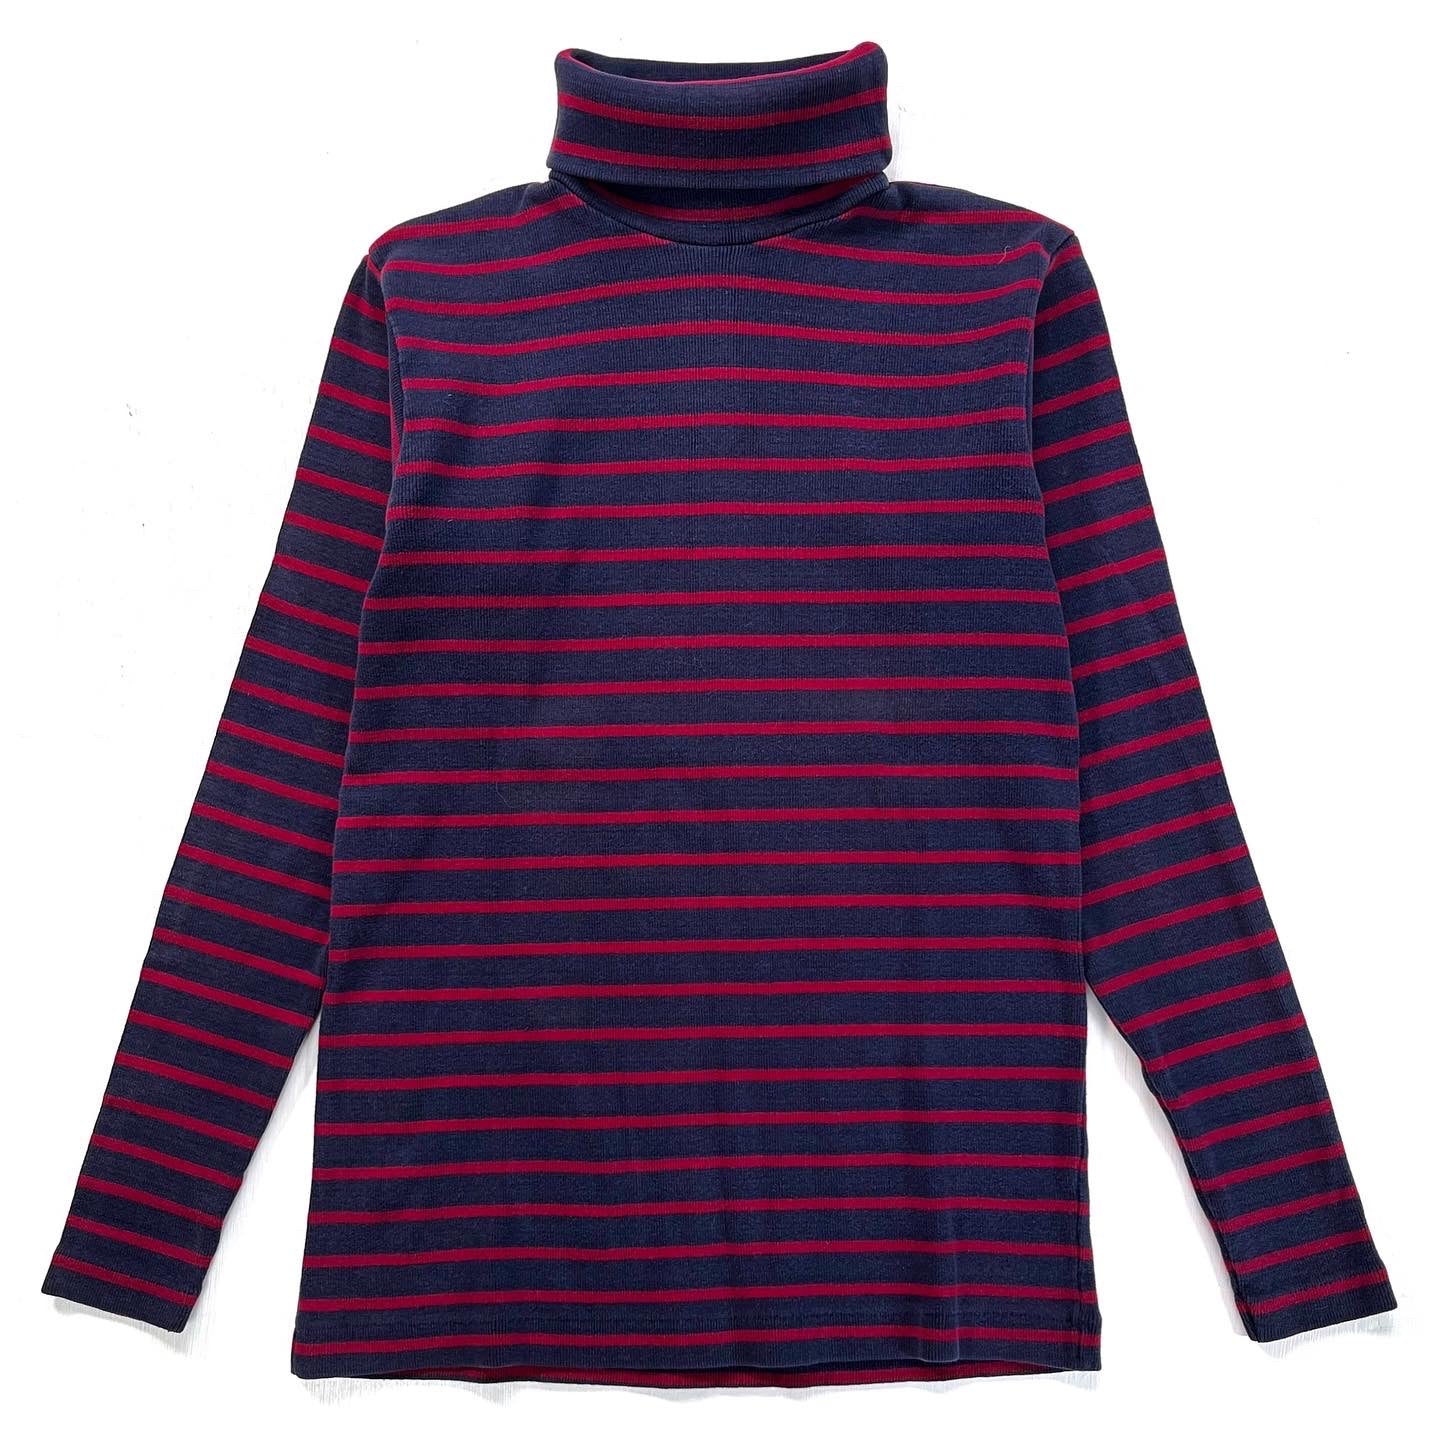 1970s Patagonia Knit Sailor Shirt, Navy & Red Breton Stripe (XS/S)